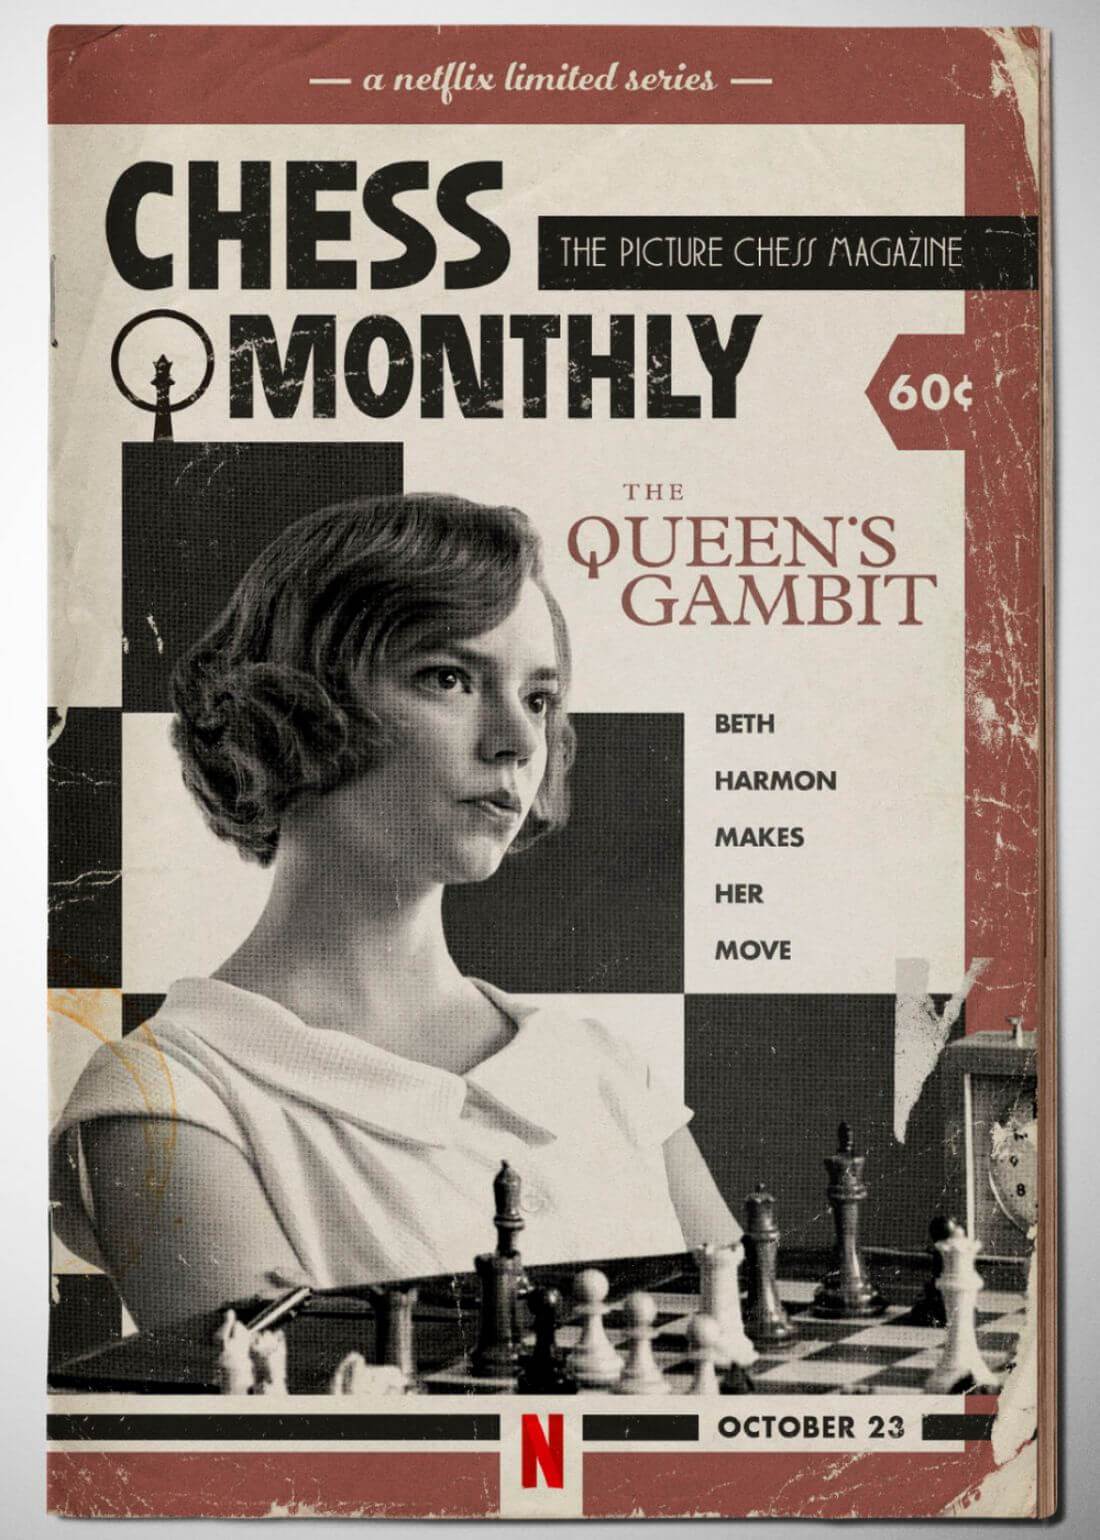 Benny Watts and Beth Harmon The Queen's Gambit | Art Print